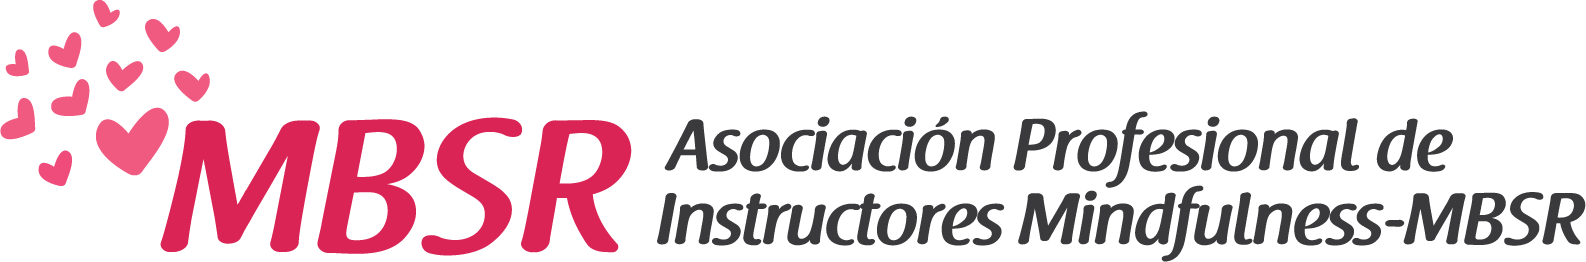 Asociación Profesional de Instructores Mindfulness MBSR Logo